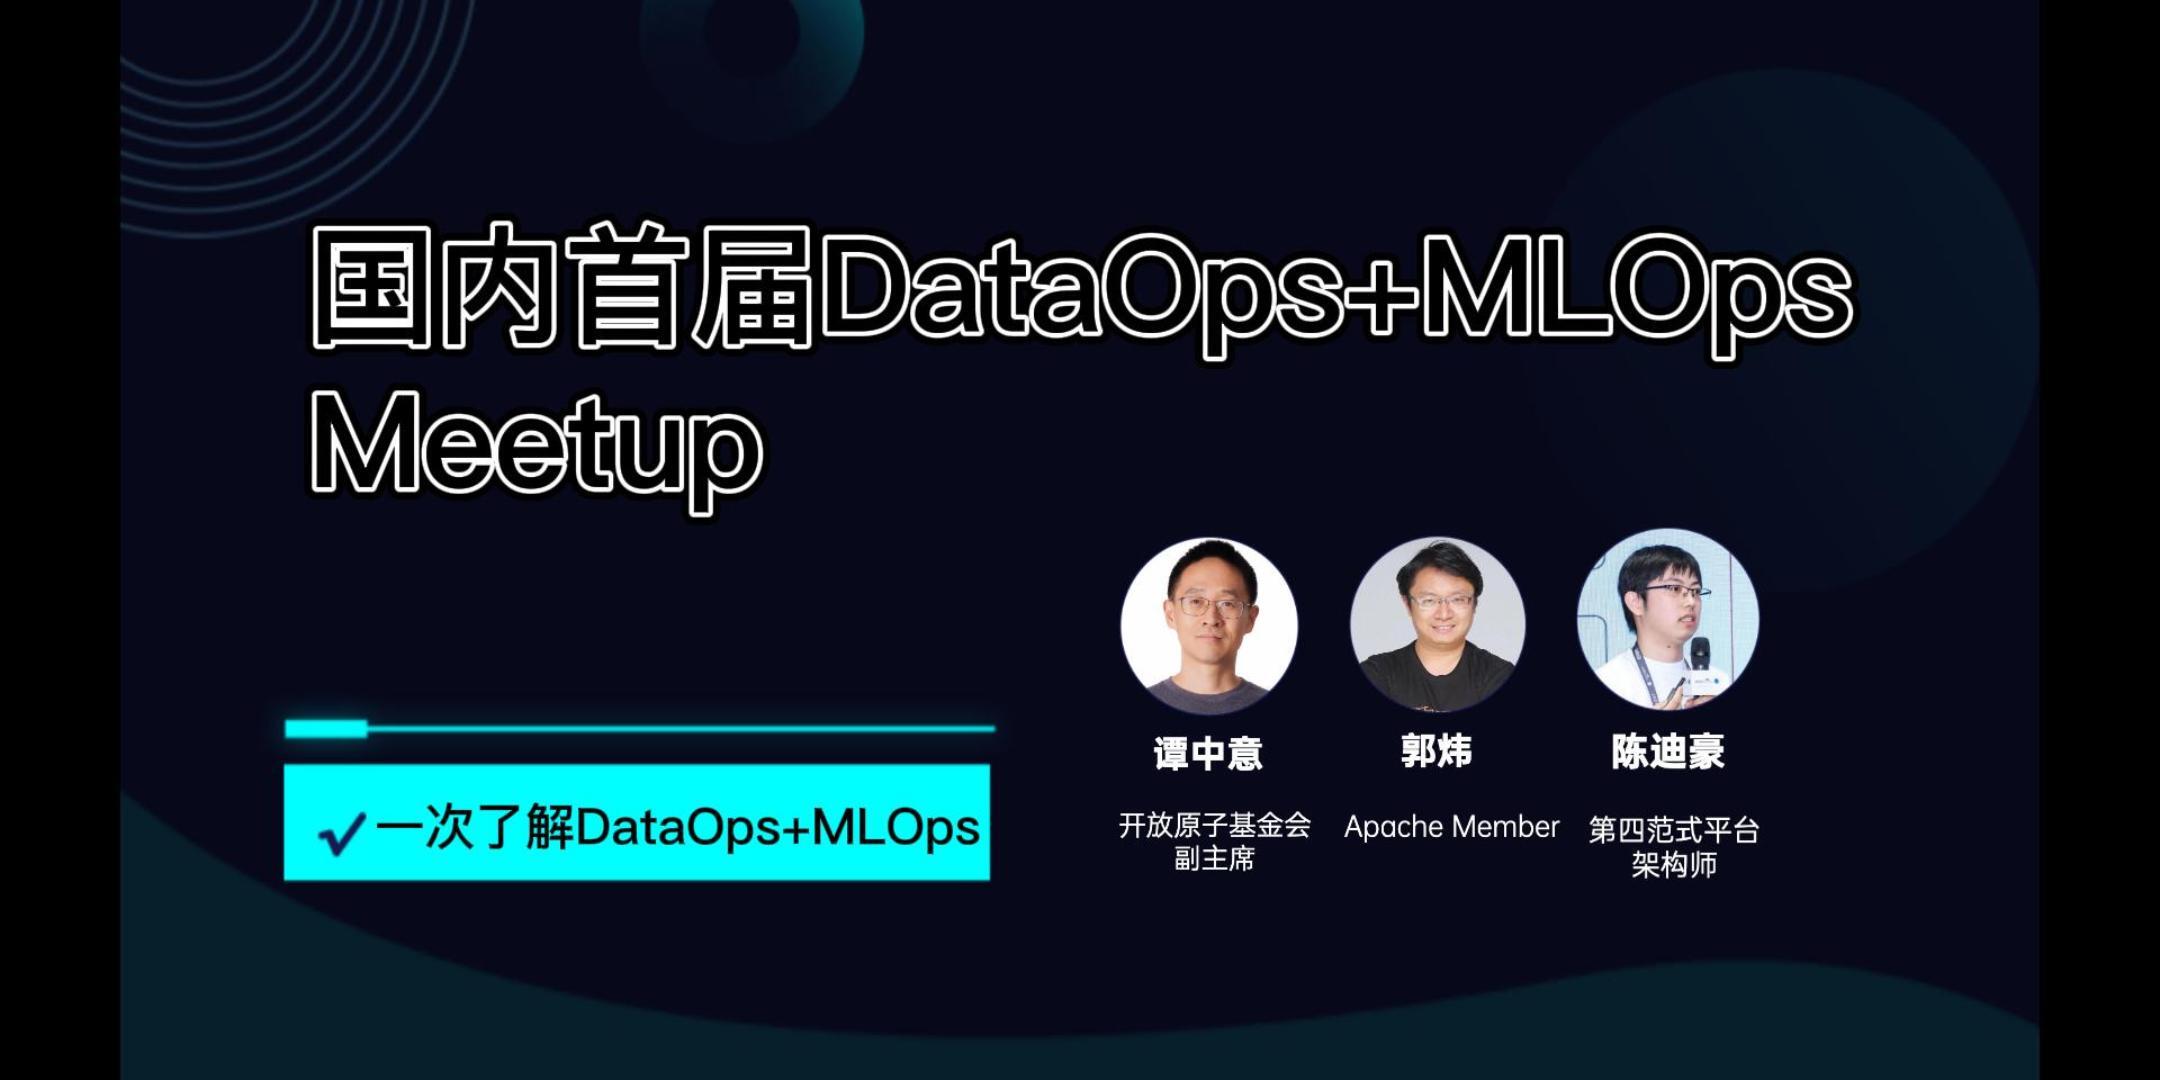 国内首届DataOps+MLOps meetup回顾